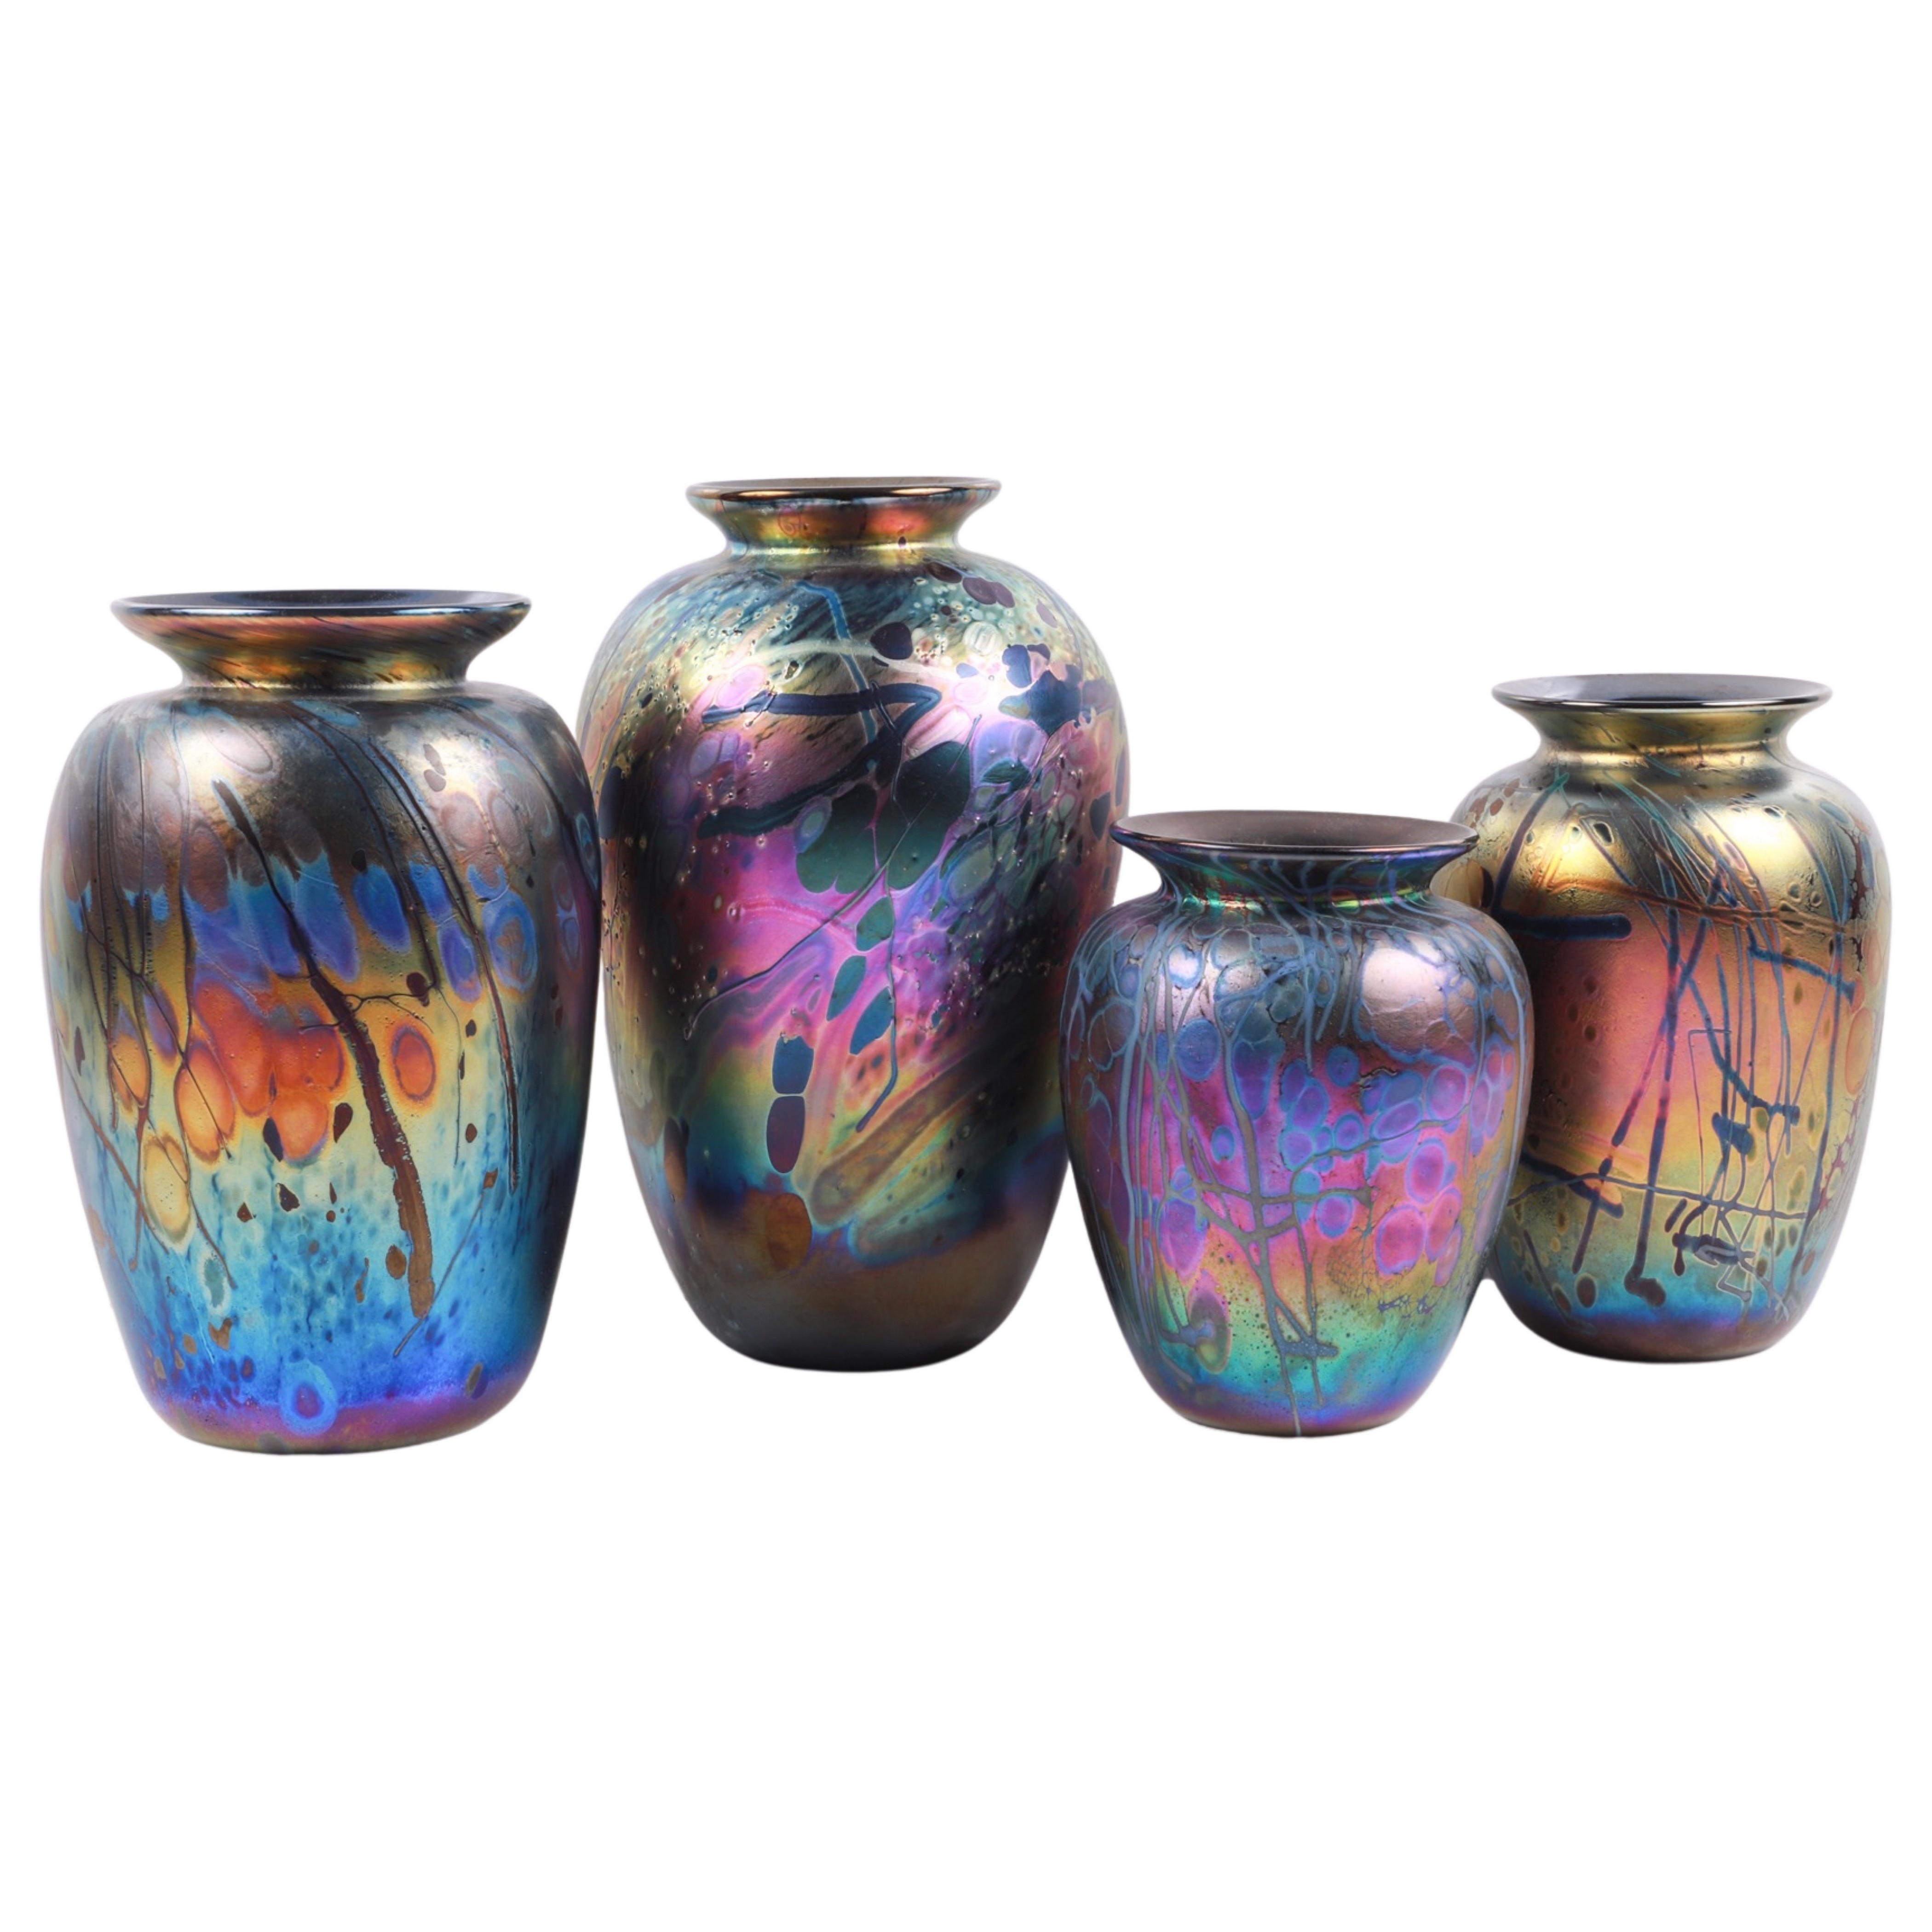  4 Arthur Allison art glass vases  3b45c7